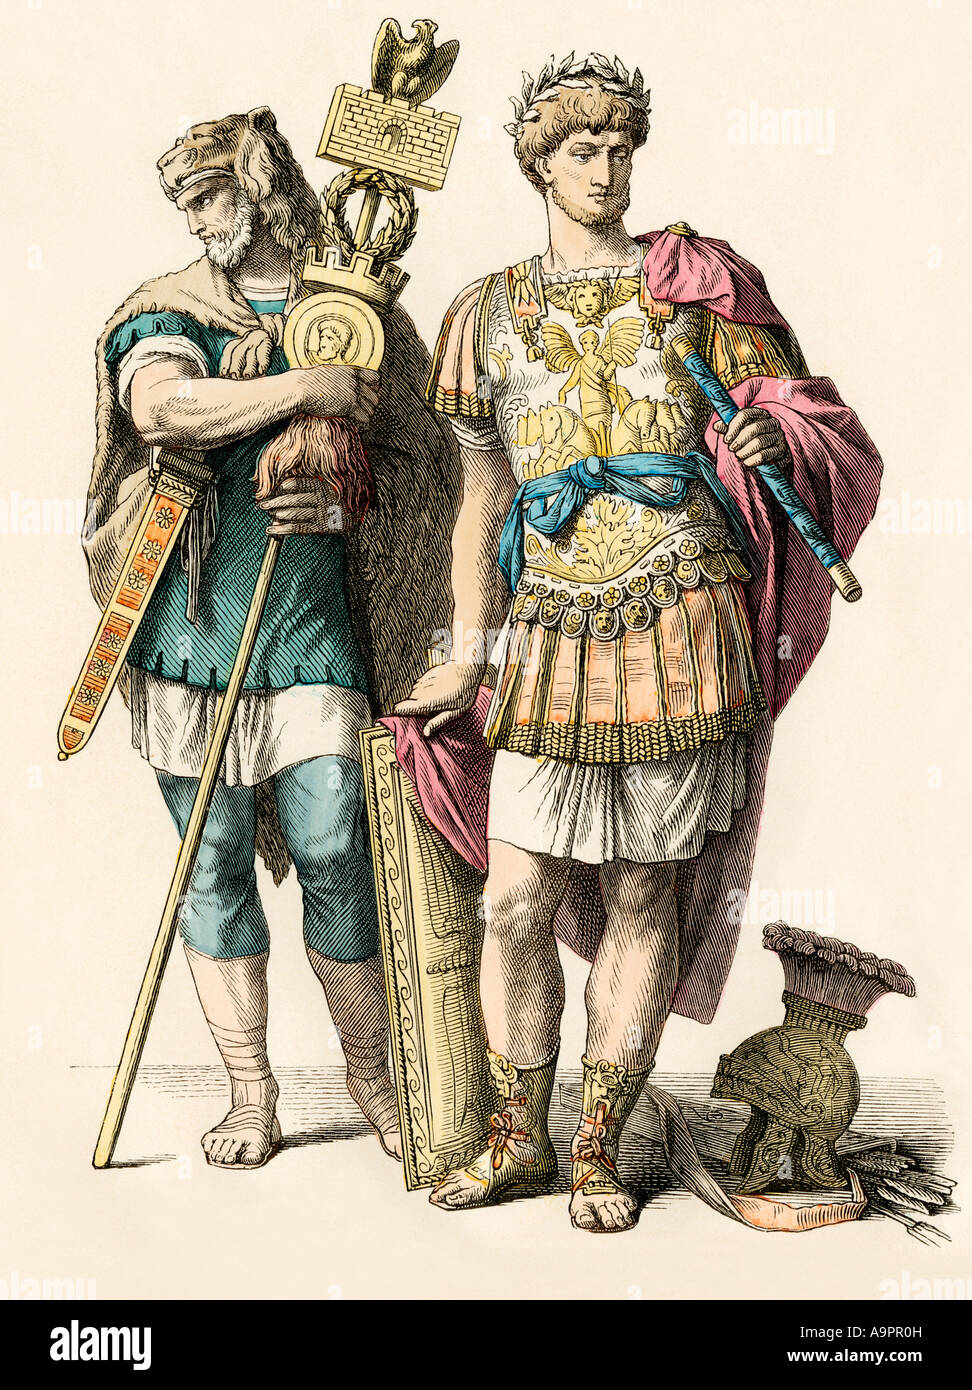 Général romain accompagné d'un guerrier. Impression couleur à la main Banque D'Images